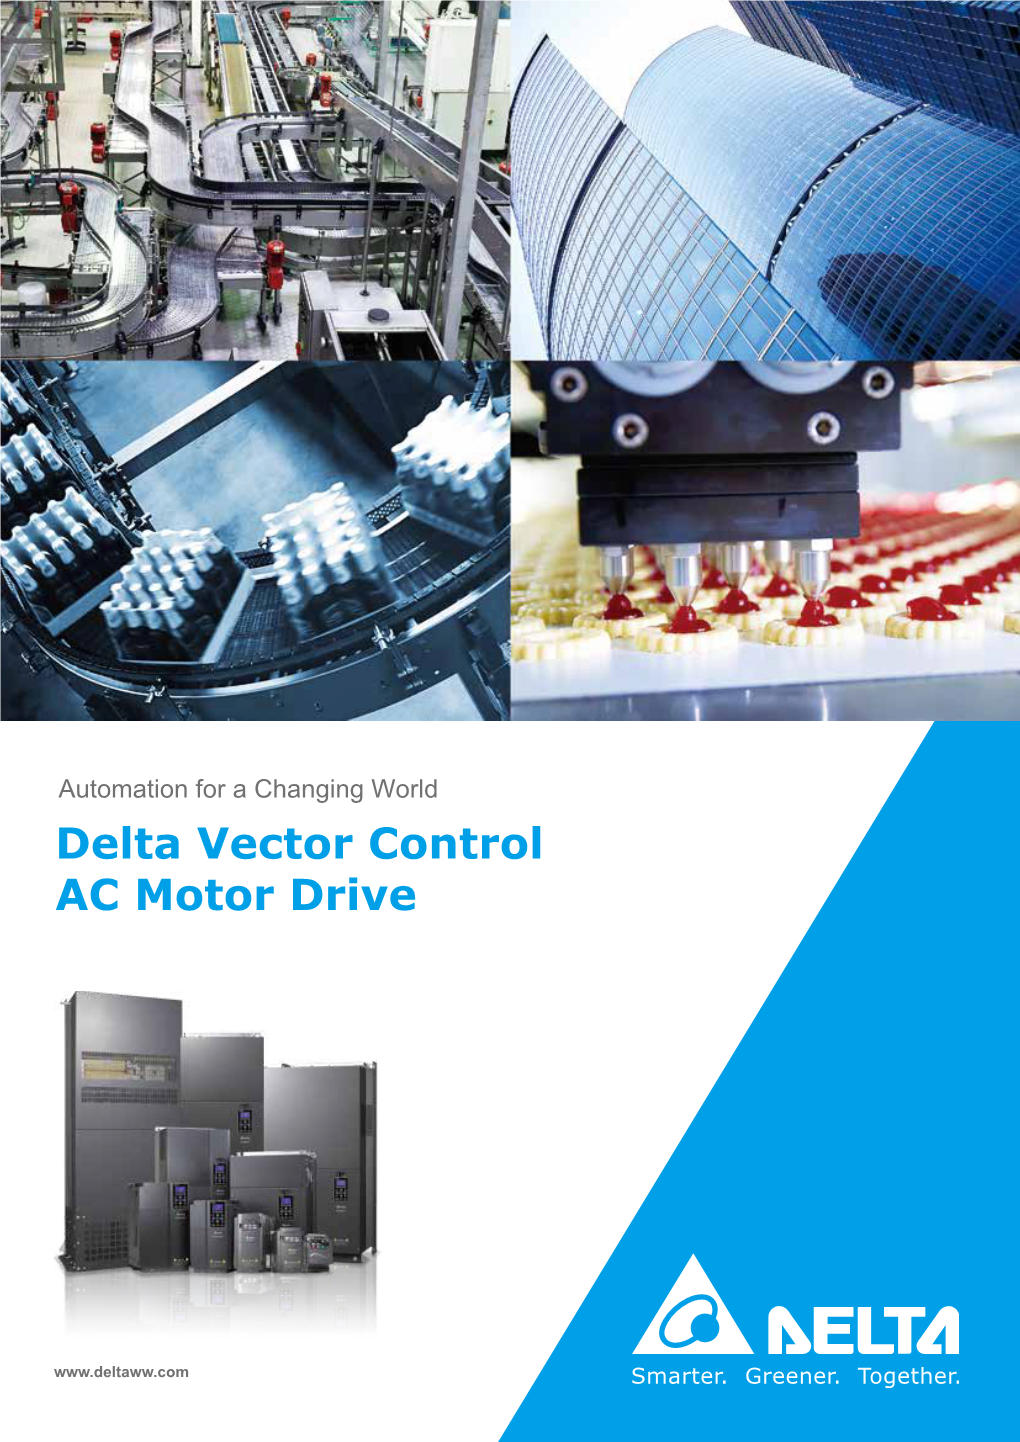 Delta Vector Control AC Motor Drive